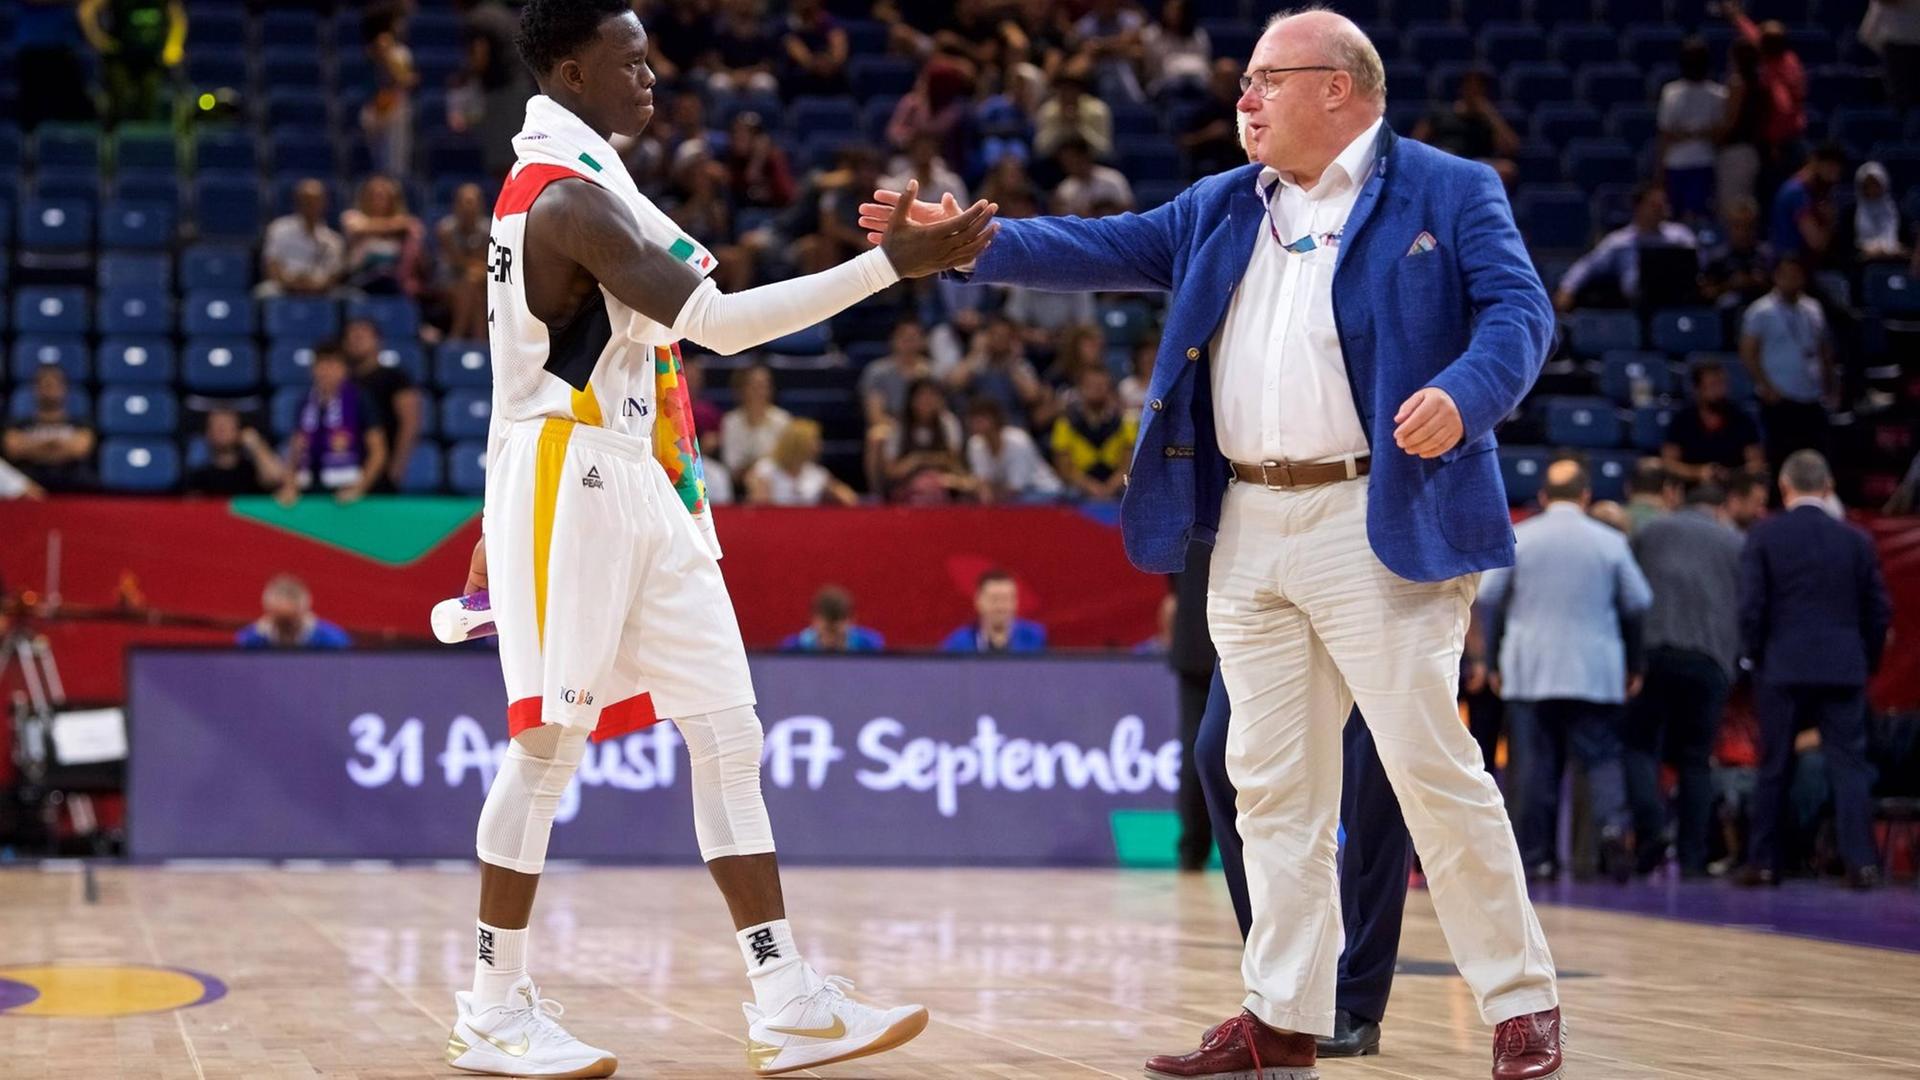 Am 12.09.2017 beim Viertelfinale Deutschland-Spanien der Europameisterschaft der Herren: Basketball-Nationalspieler Dennis Schröder mit DBB-Präsident Ingo Weiss.